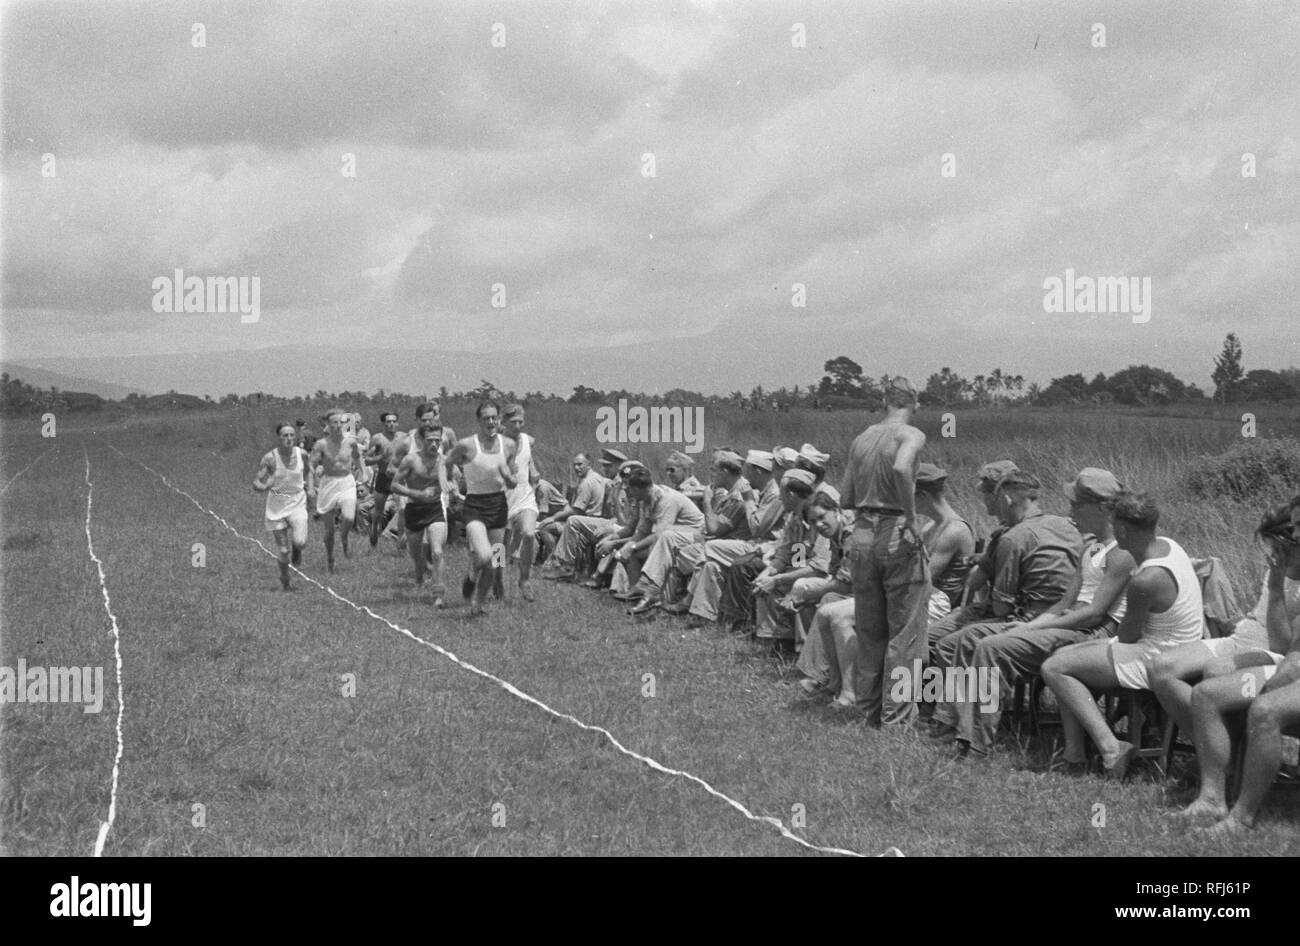 Atletiekwedstrijd Op De Bult te Salatiga op 10 maart 1948 Bestanddeelnr 1578-3-2. Stockfoto